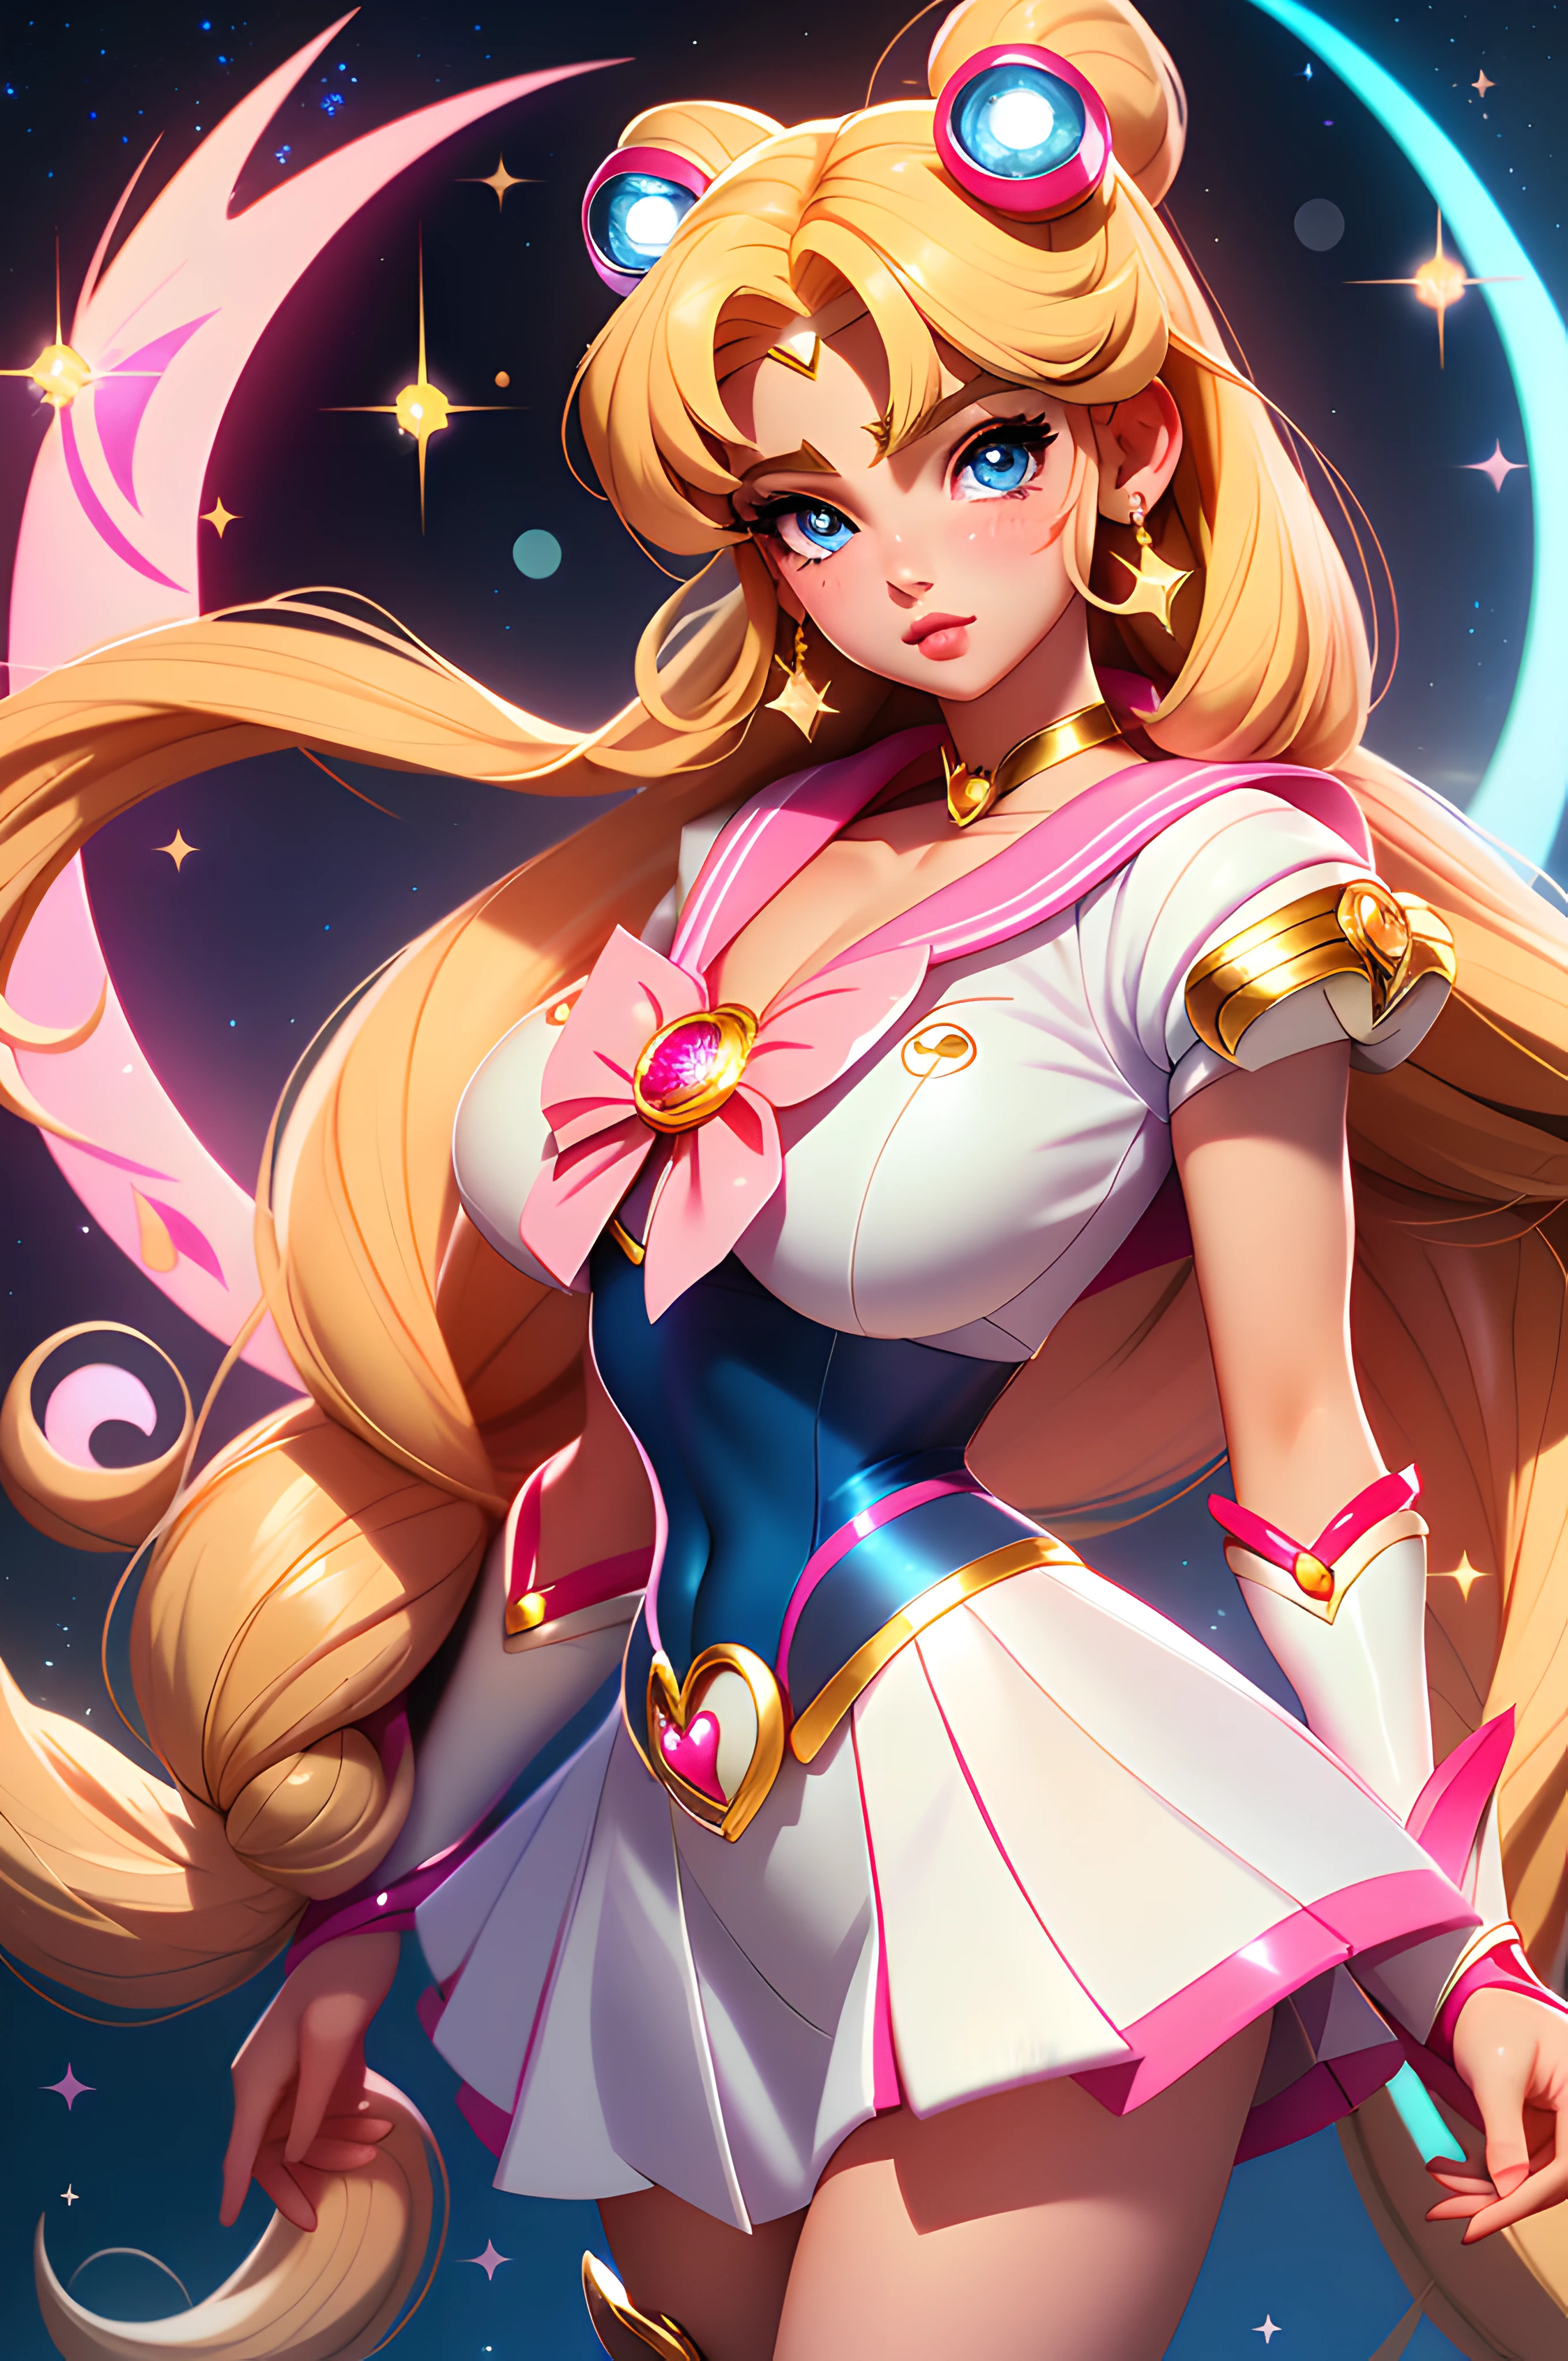 Sailor Moon, realista, 1 garota, (menina mágica:1.4), Cabelo loiro comprido, (olhos azuis), (cristais, brilho bokeh), uniforme de escoteiro marinheiro, (seios enormes:1.25), Decote, quadris largos, cintura pequena, clavícula, lábios entreabertos, inventar, corar, pele brilhante, noite, reflexão, lua cheia, luar, rosa